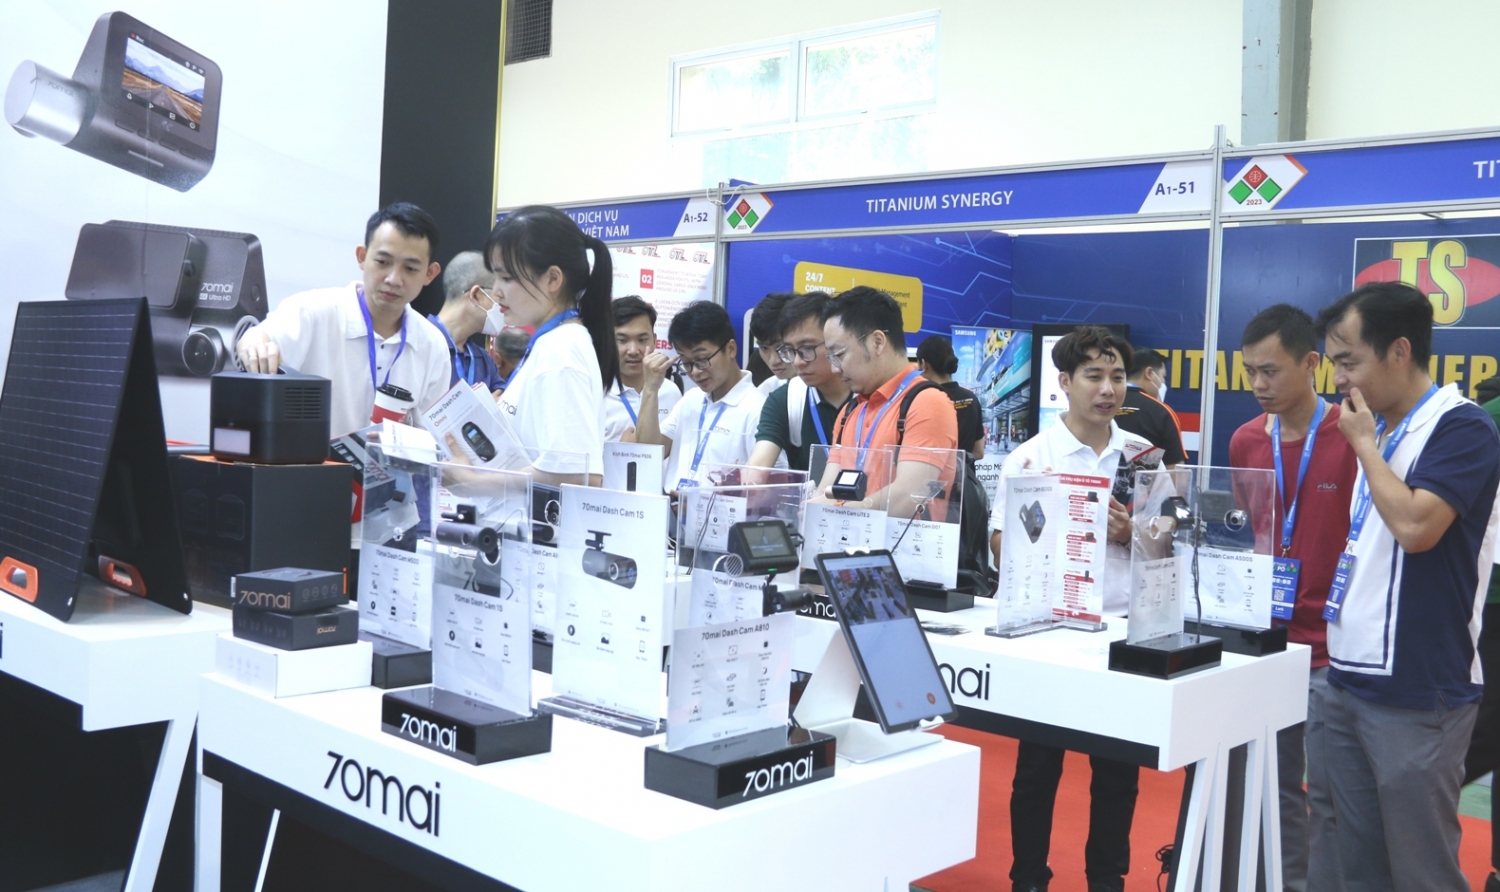 Hơn 500 doanh nghiệp trưng bày sản phẩm tại Vietnam Expo 2023